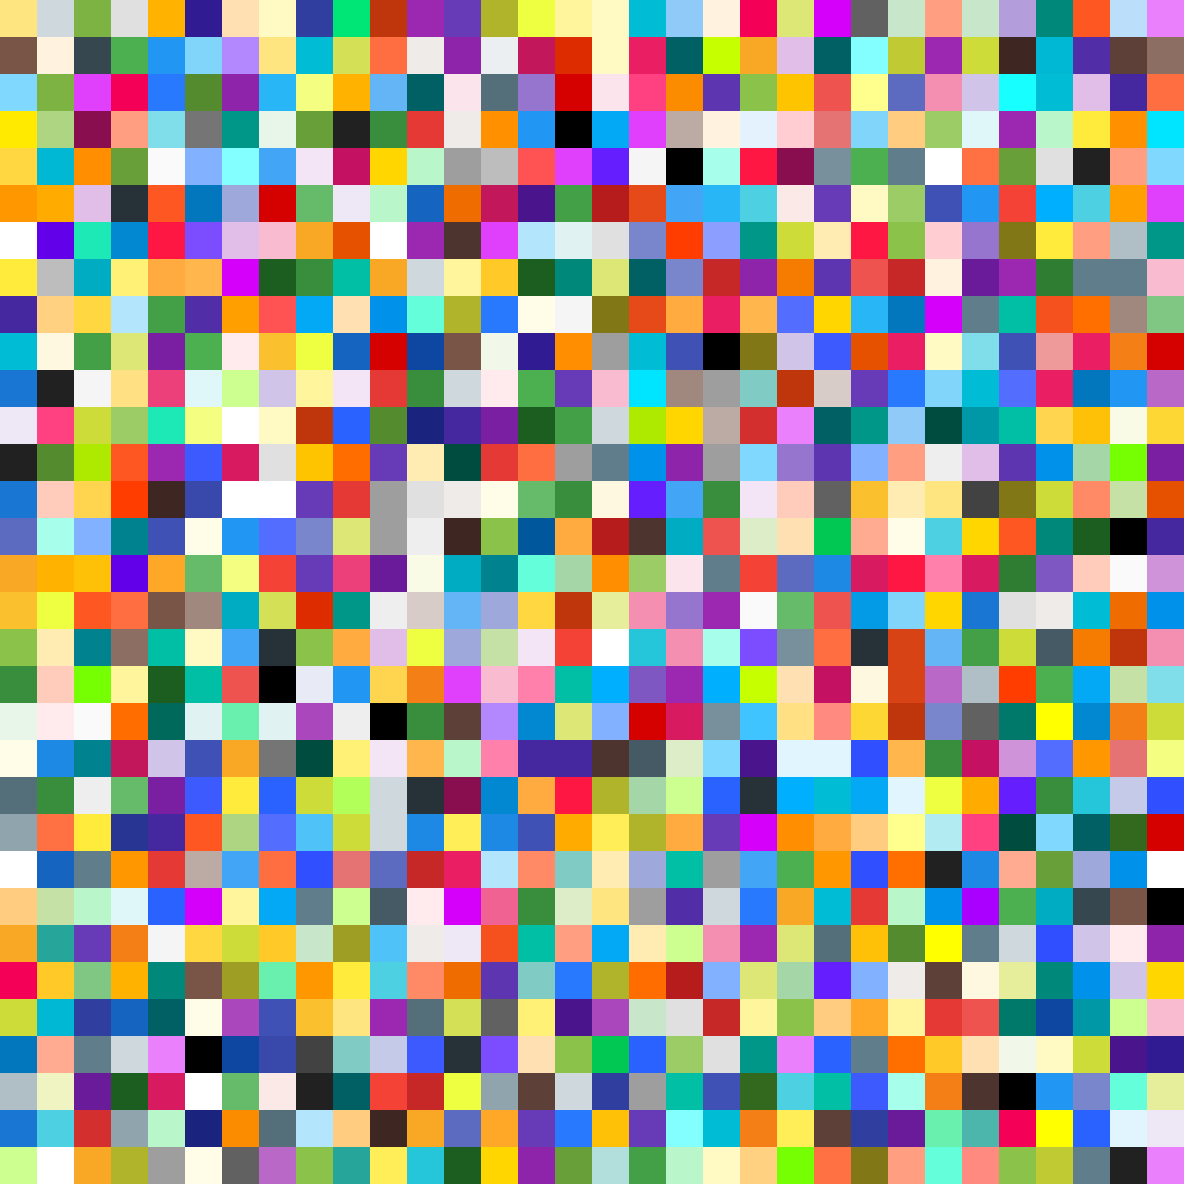 Маленький цветные квадратики. Разноцветные квадратики. Разноцветные квадрики. Много разноцветных квадратиков. Радужные квадраты.